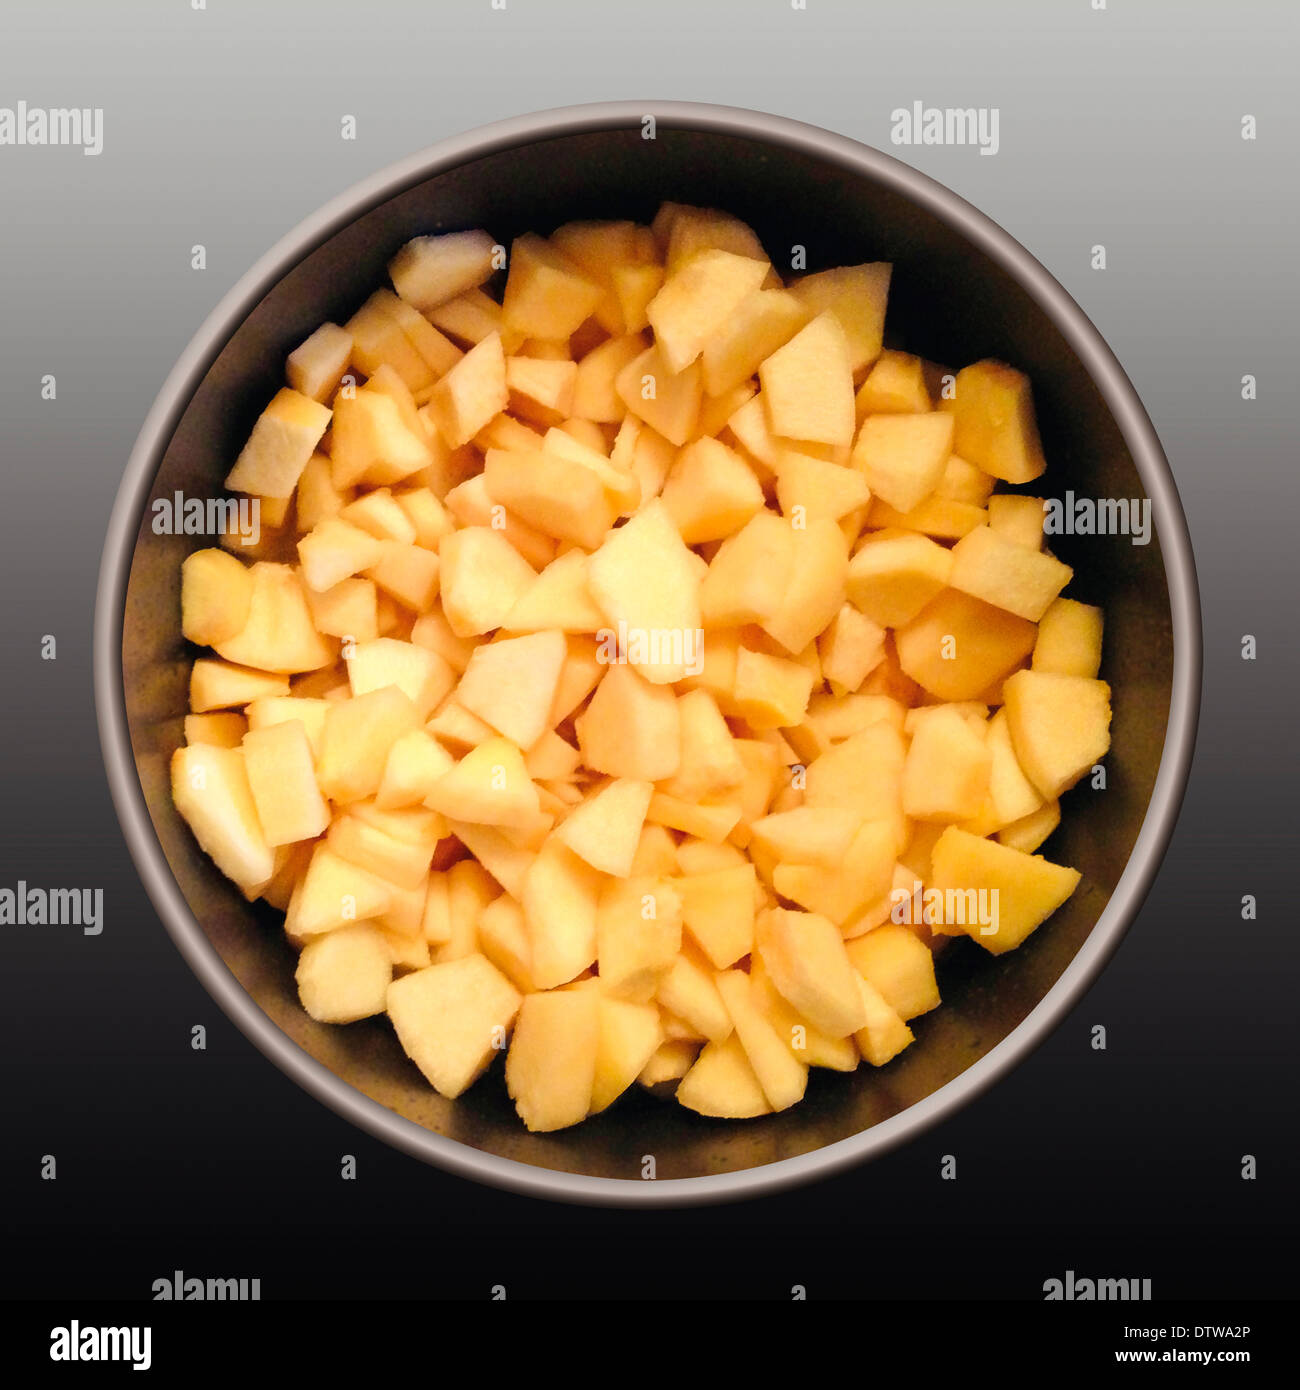 Des quartiers de pommes dans une casserole pour faire le strudel aux pommes, de la confiture ou compote. Banque D'Images